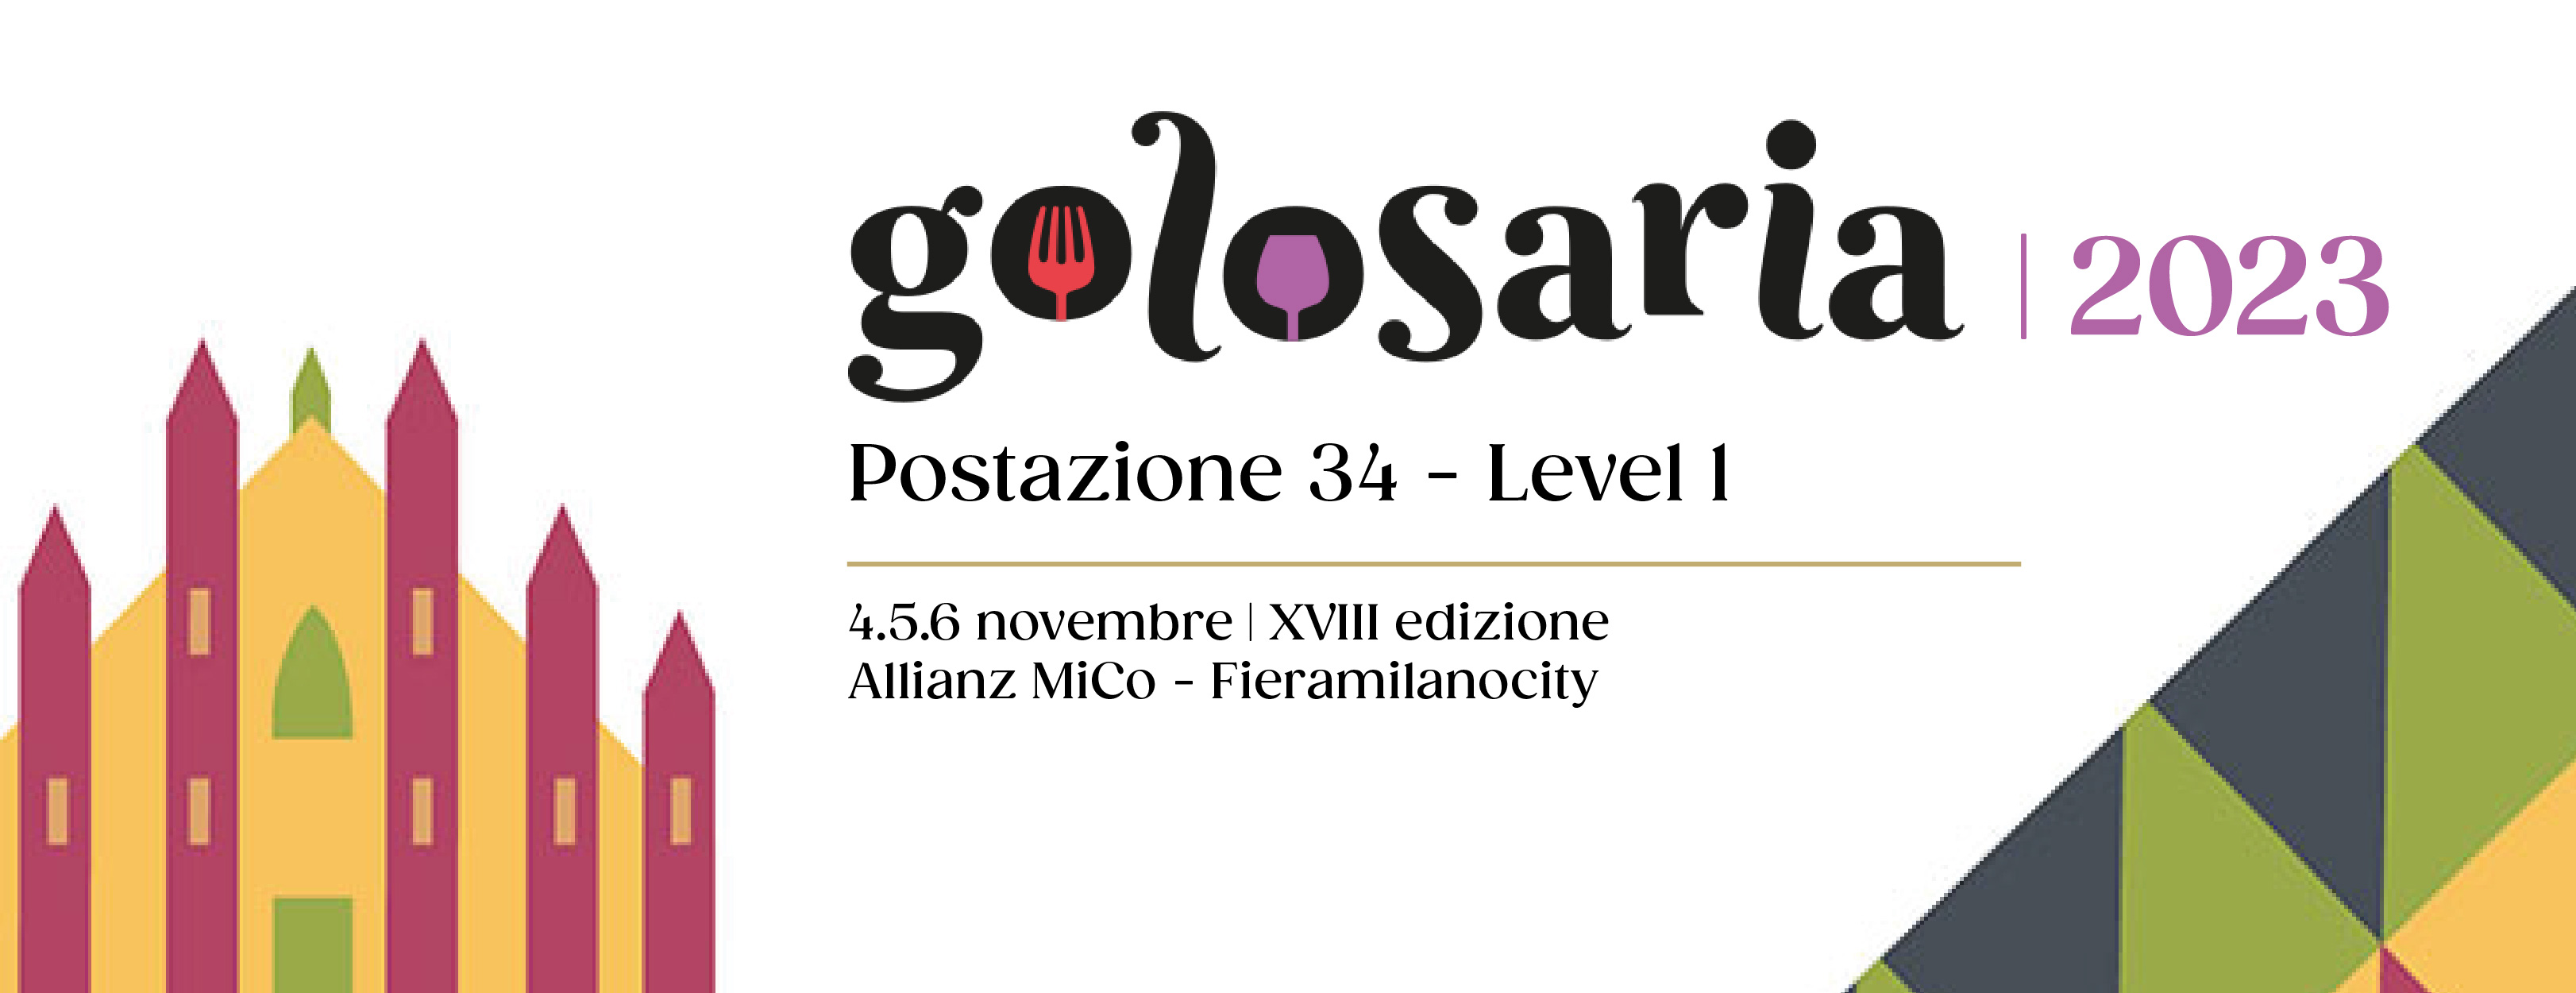 Golosaria 2023 | XVIII edizione